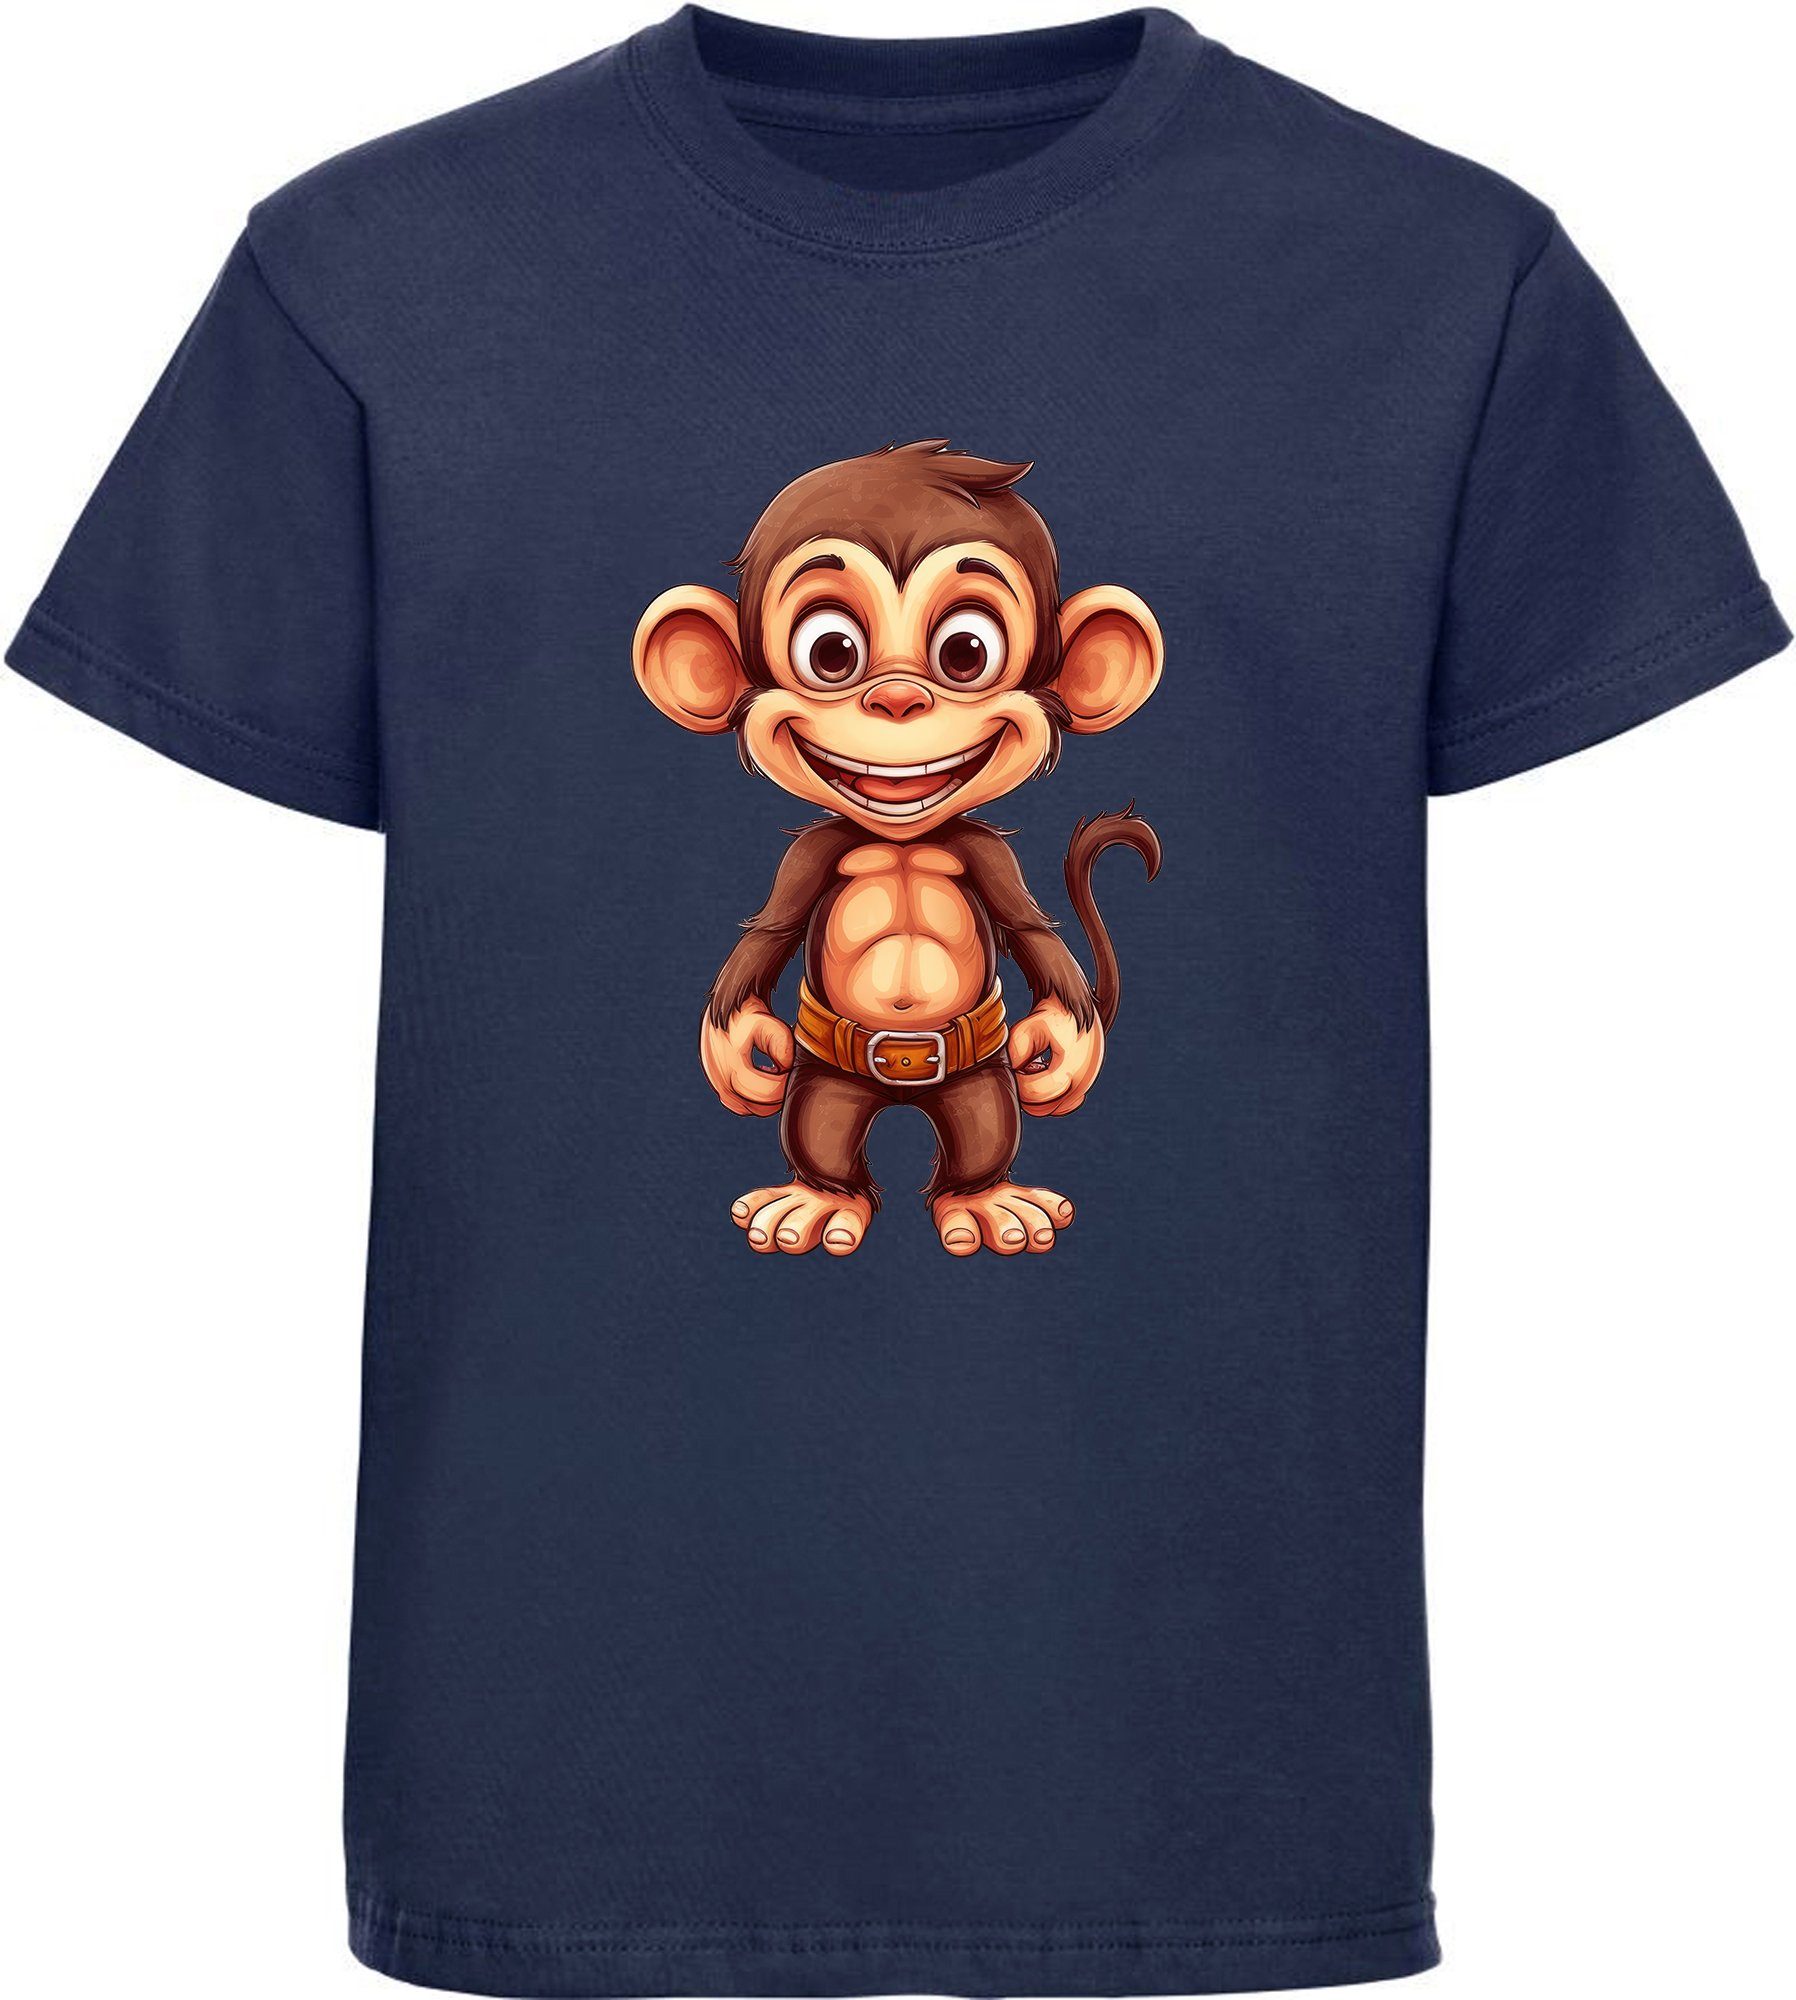 MyDesign24 T-Shirt Kinder Wildtier Print Shirt bedruckt - Baby Affe Schimpanse Baumwollshirt mit Aufdruck, i276 navy blau